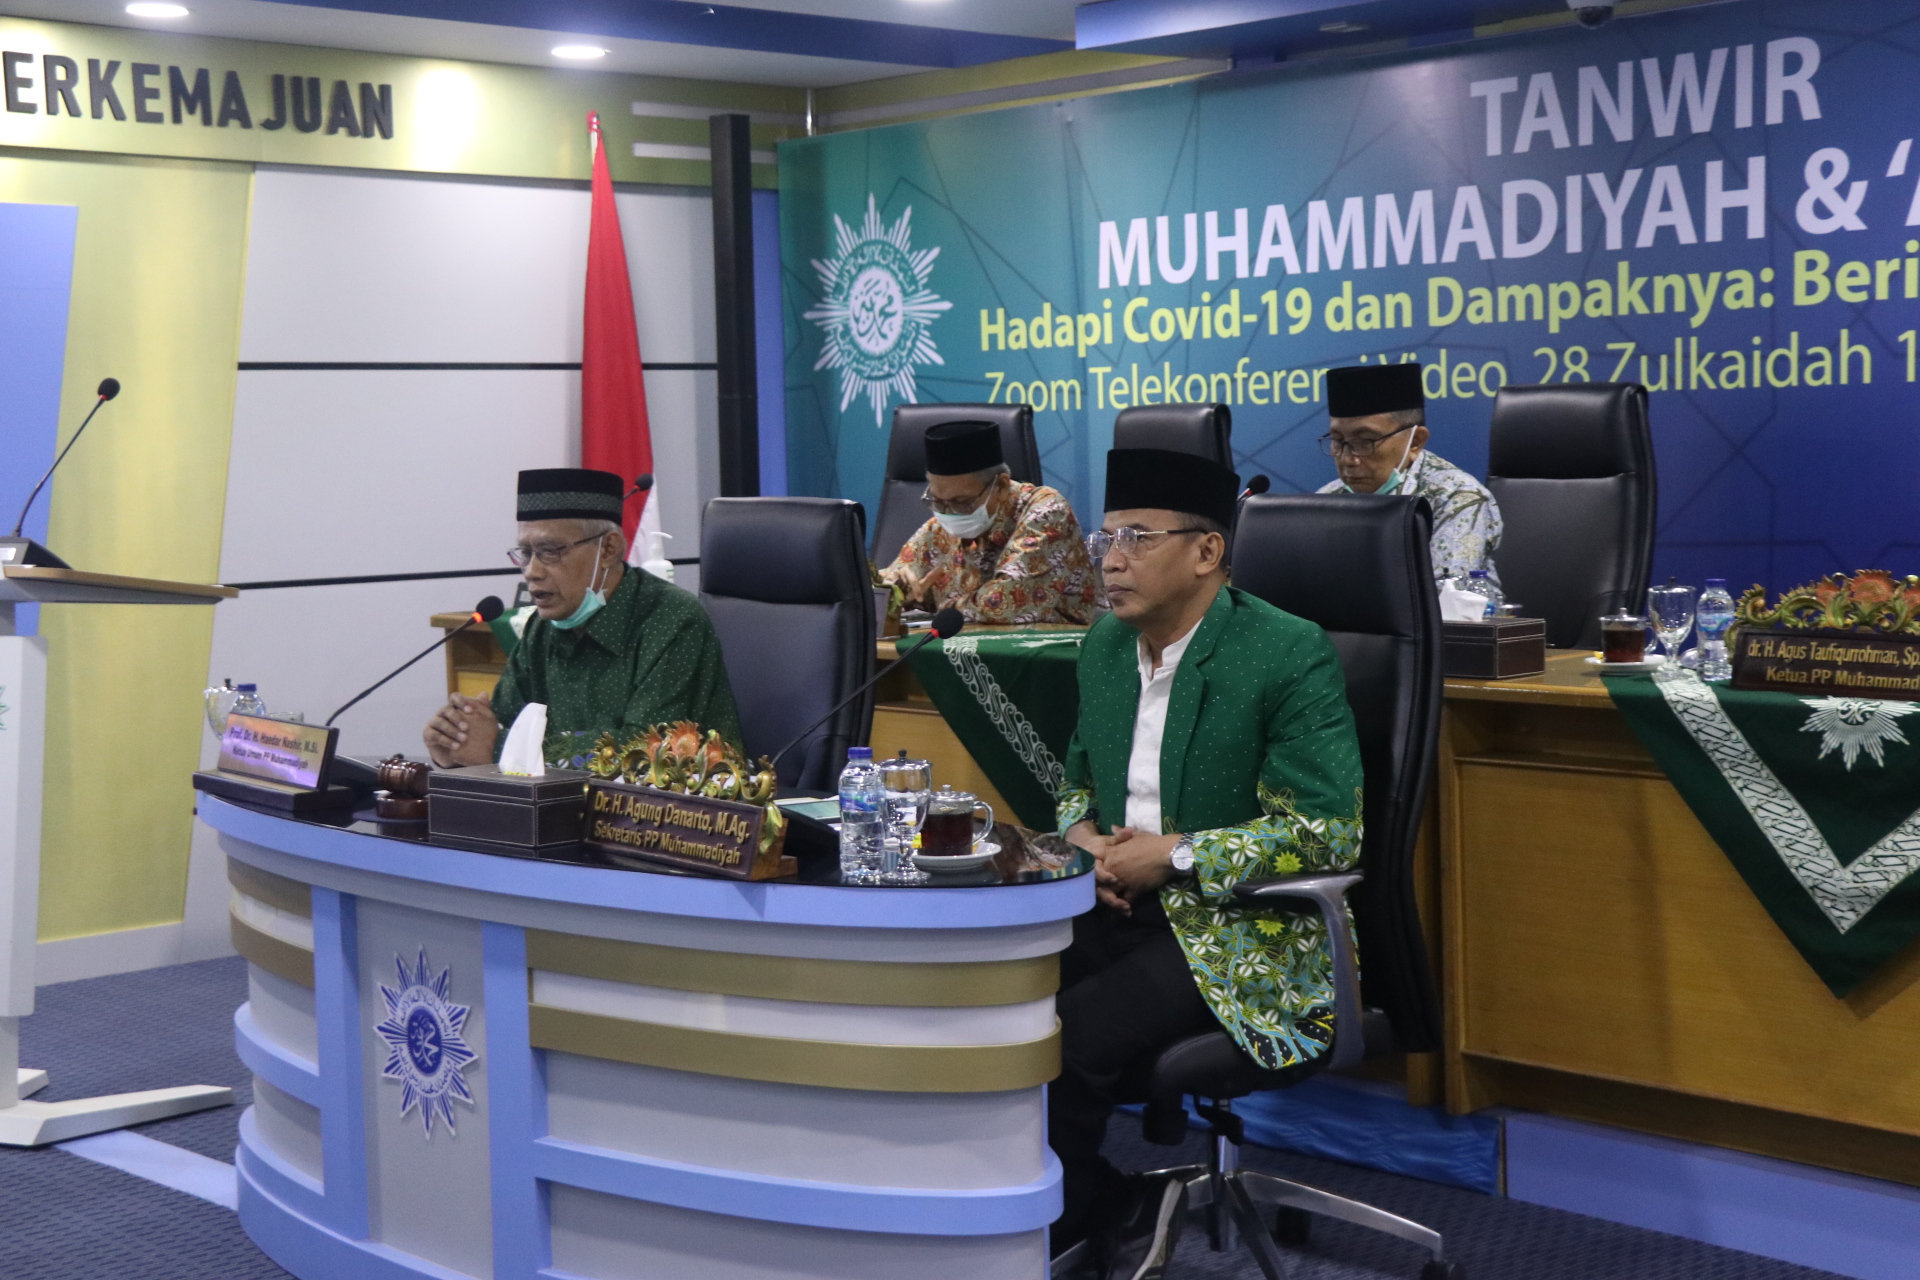 Ketua Umum Pimpinan Pusat Muhammadiyah Haedar Nashir dalam forum tanwir. (Foto: Istimewa)